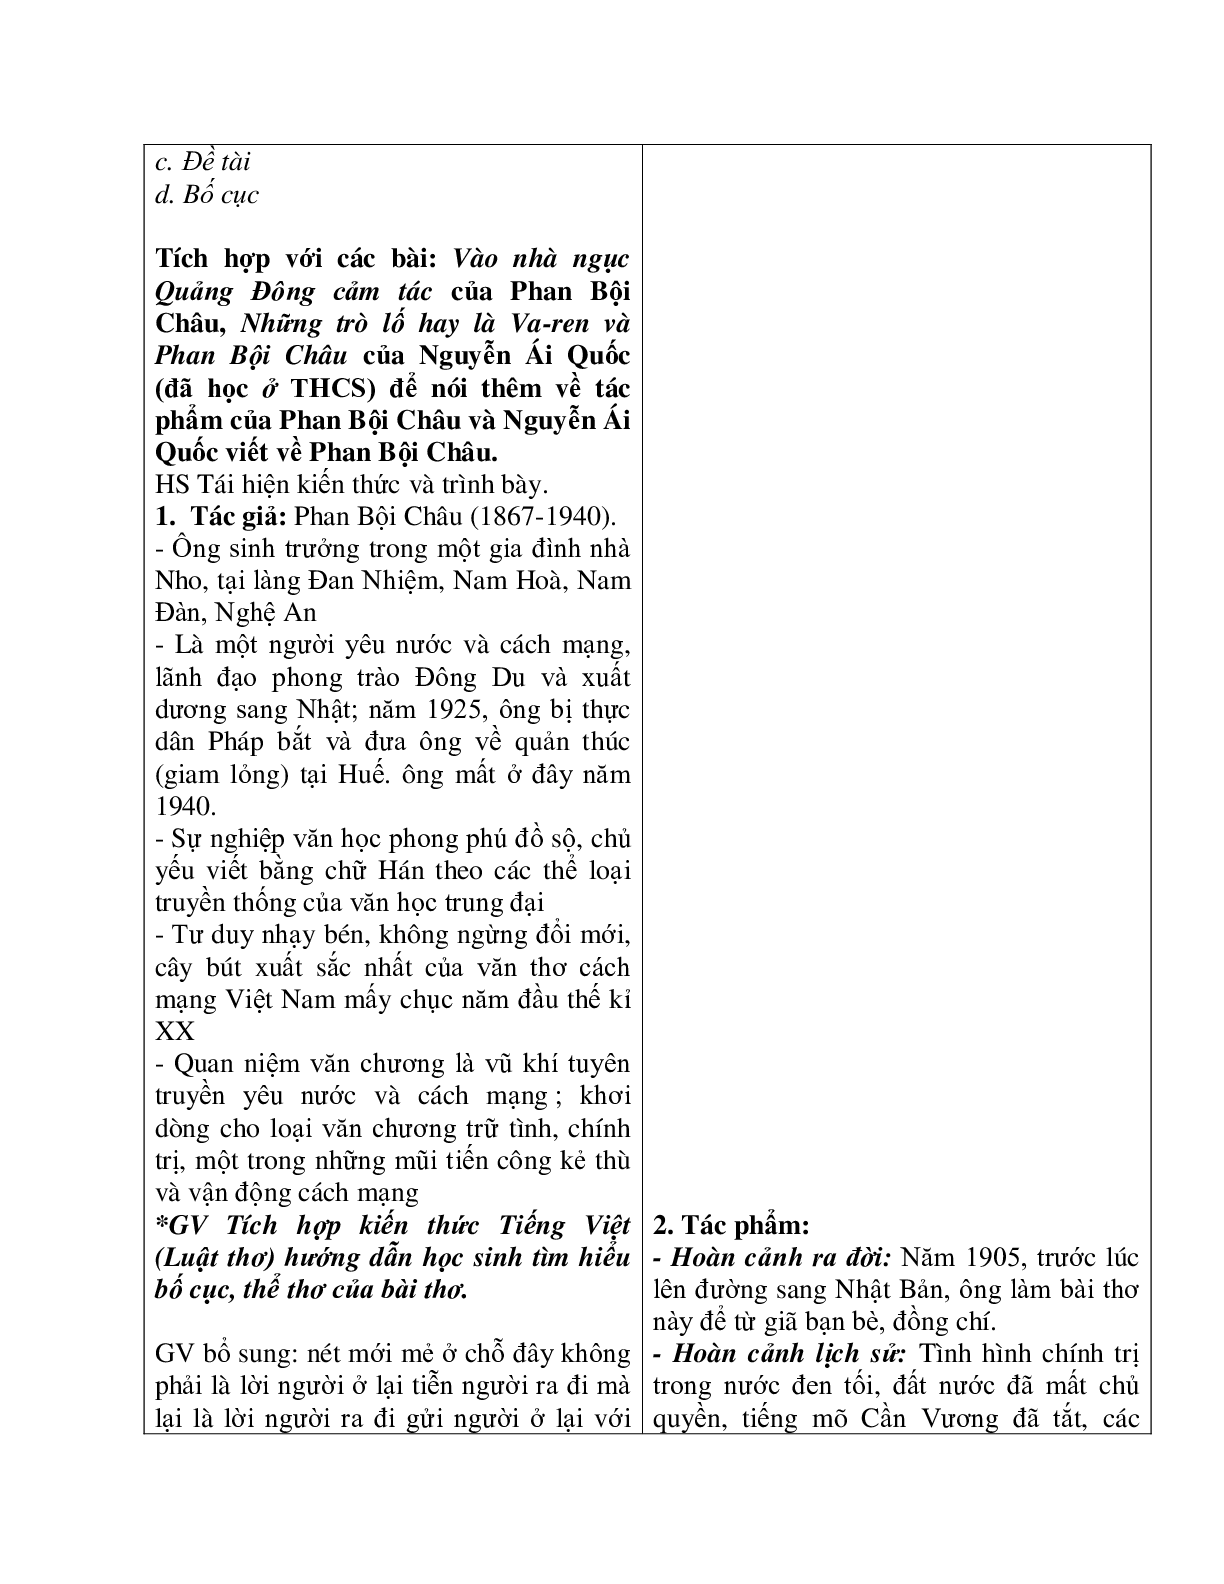 Giáo án Ngữ Văn 11: Tiết 73 lưu biệt khi xuất dương mới nhất (trang 3)